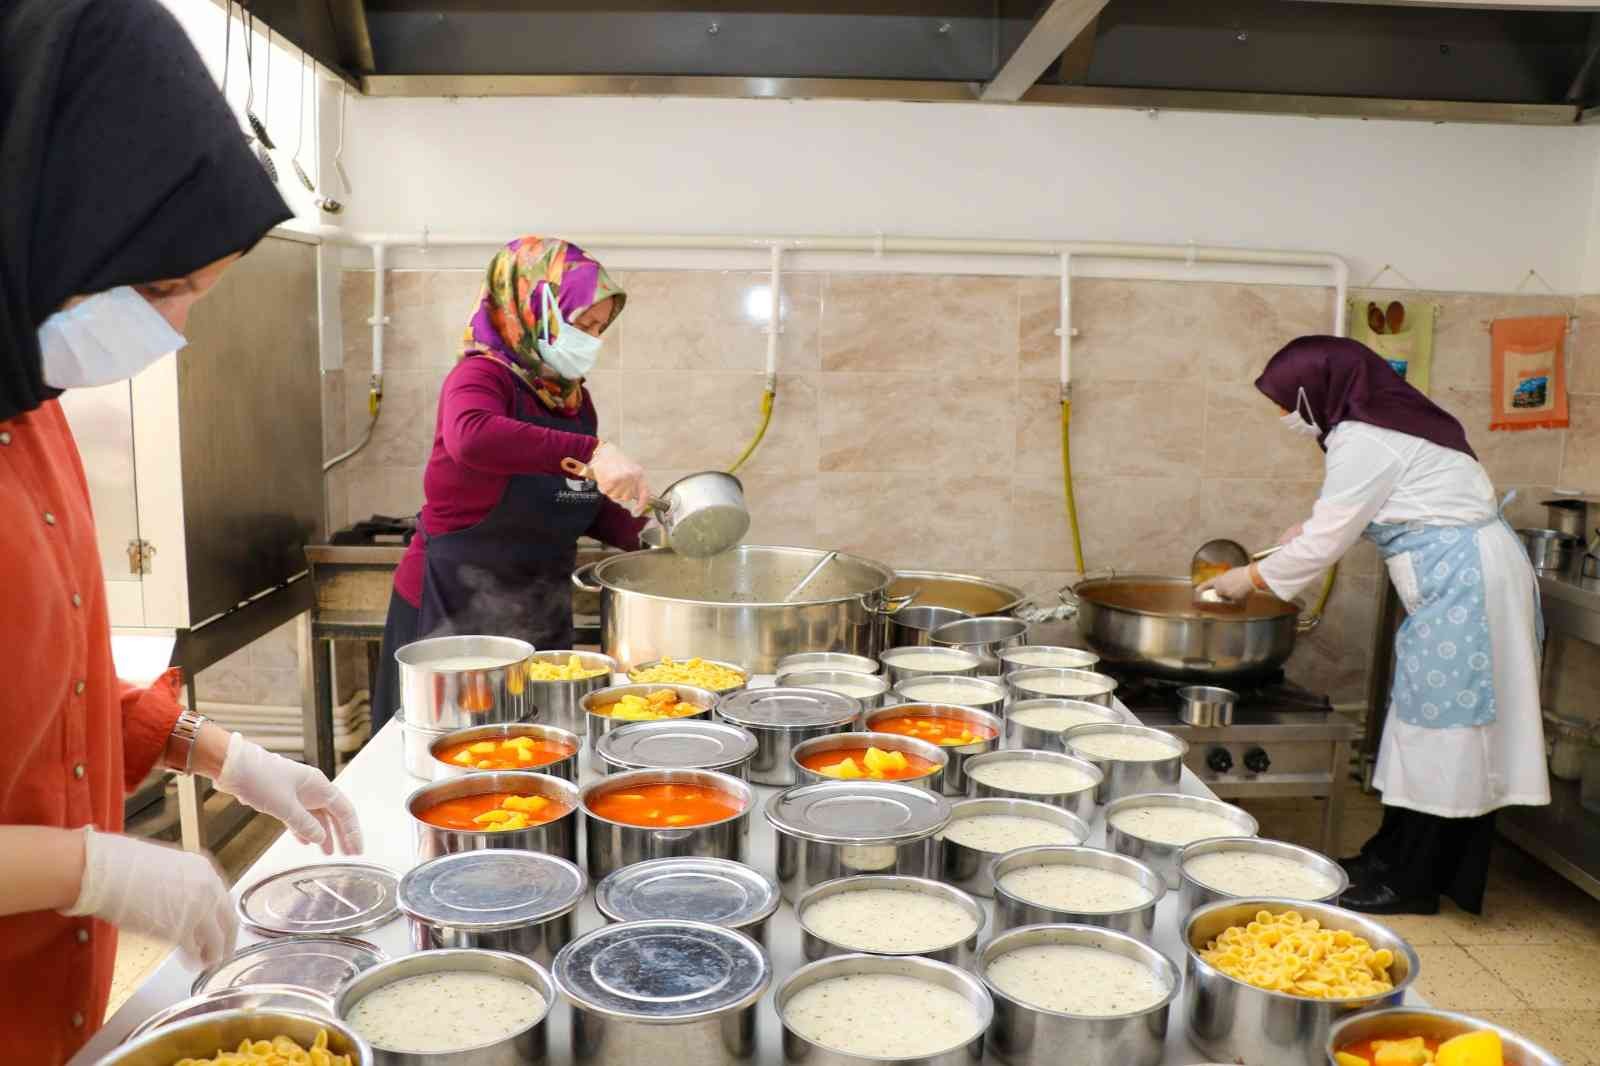 Safranbolu’da her gün 40 aileye sıcak yemek dağıtılıyor #karabuk